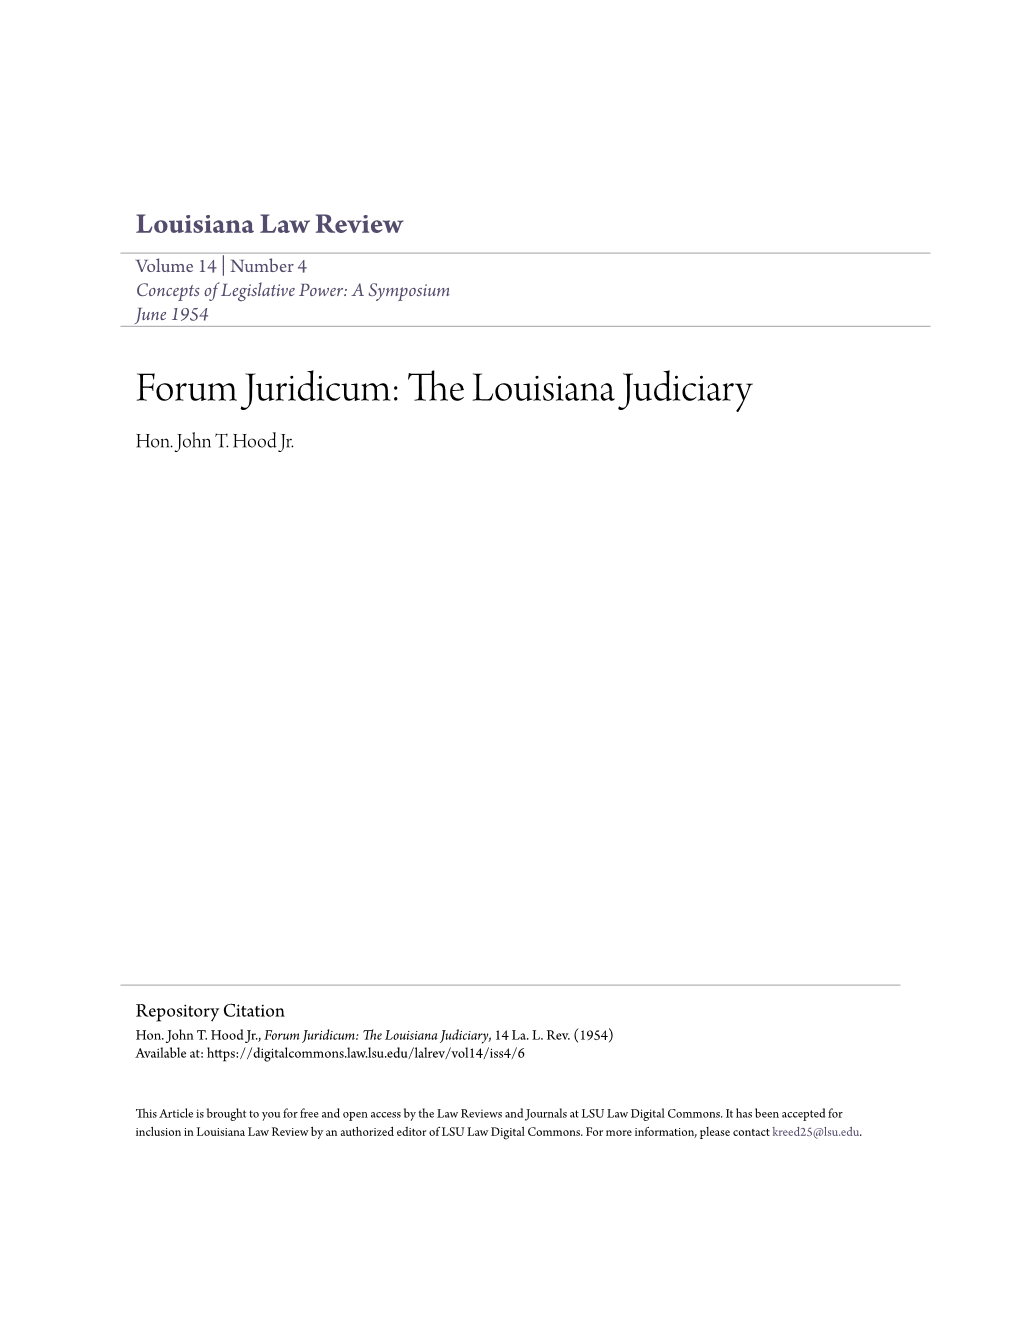 The Louisiana Judiciary Hon